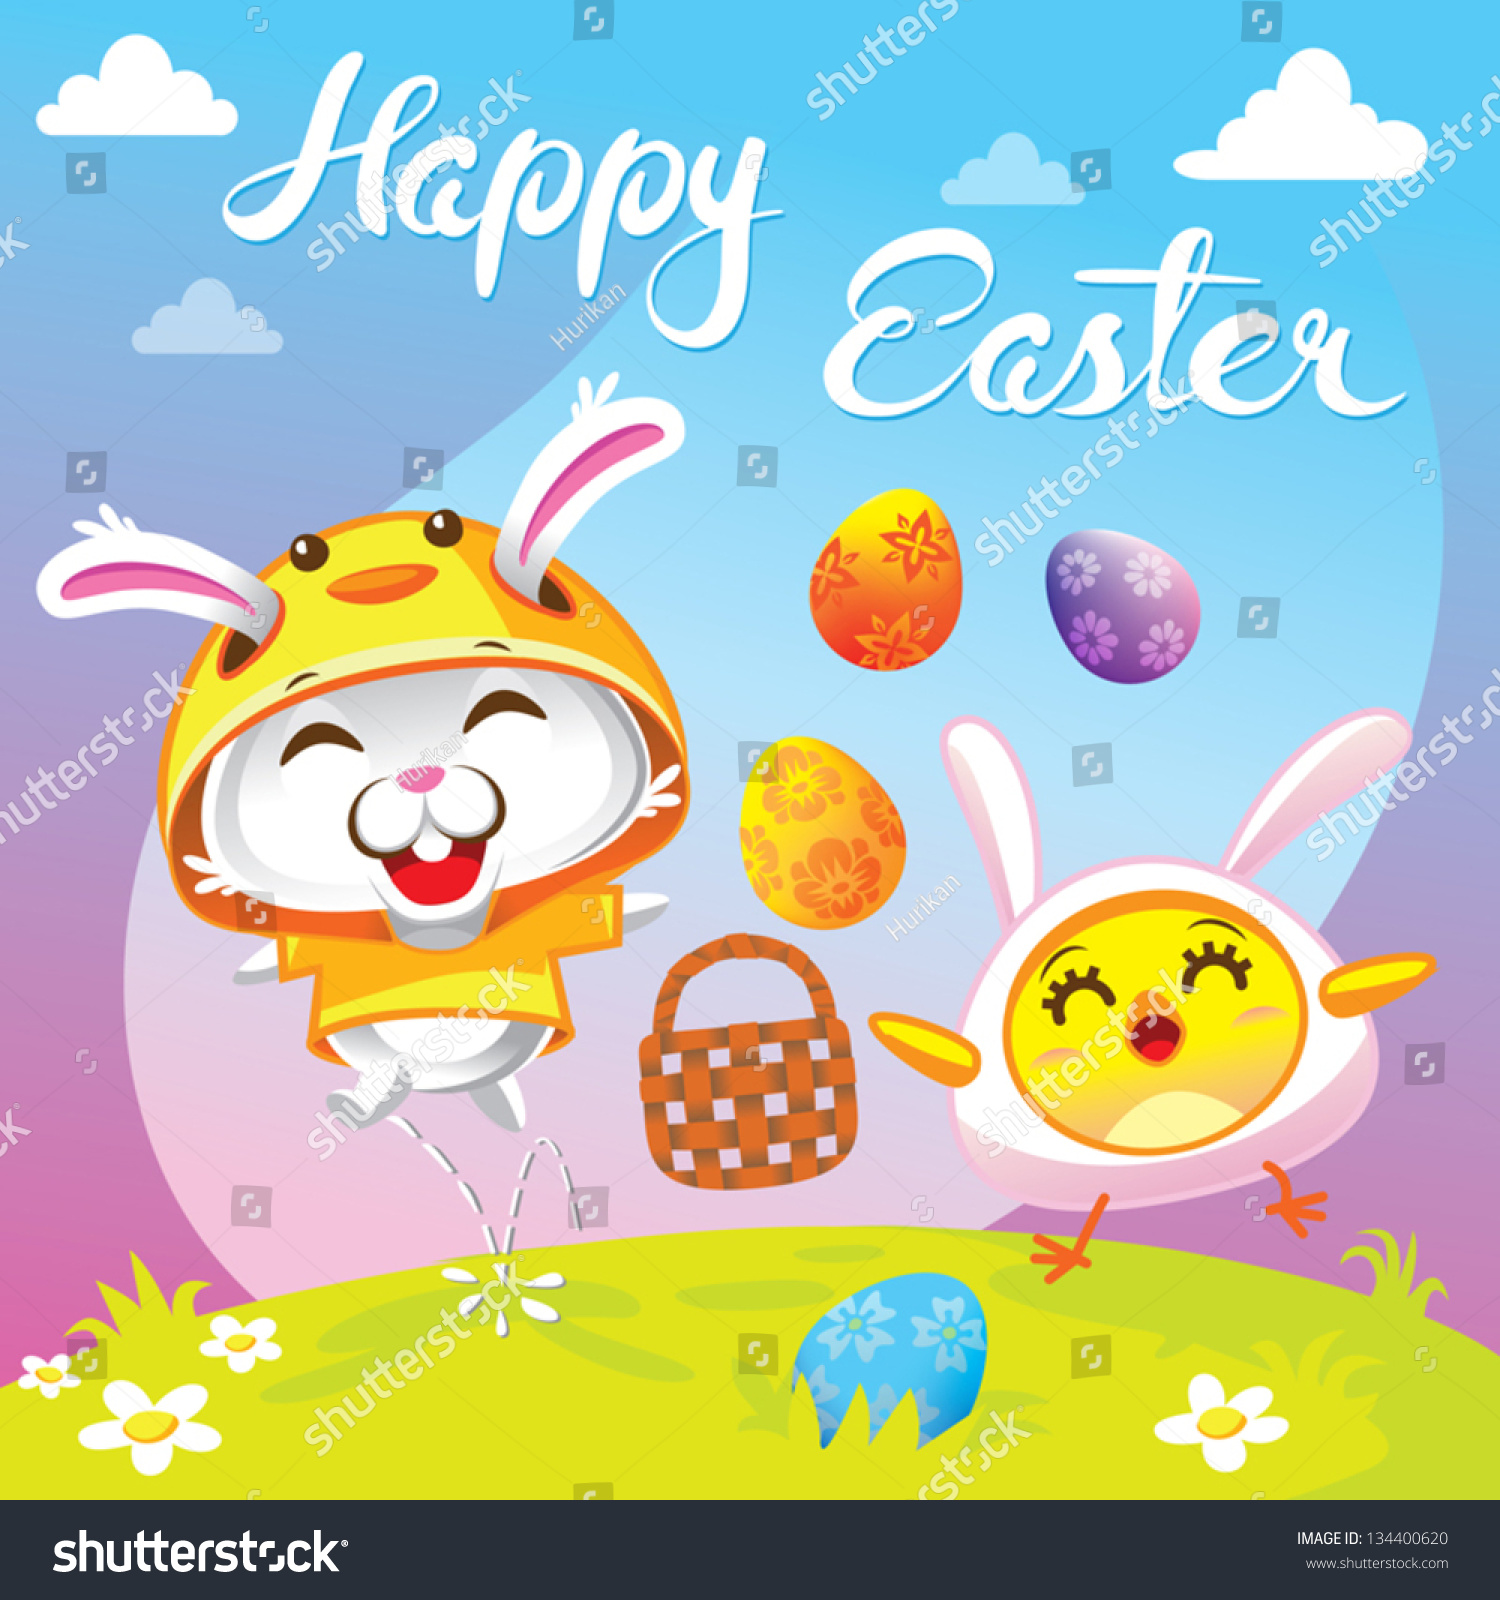 Download Bunny Rabbit Chicken Happy Easter Cartoon Stock Vector ...